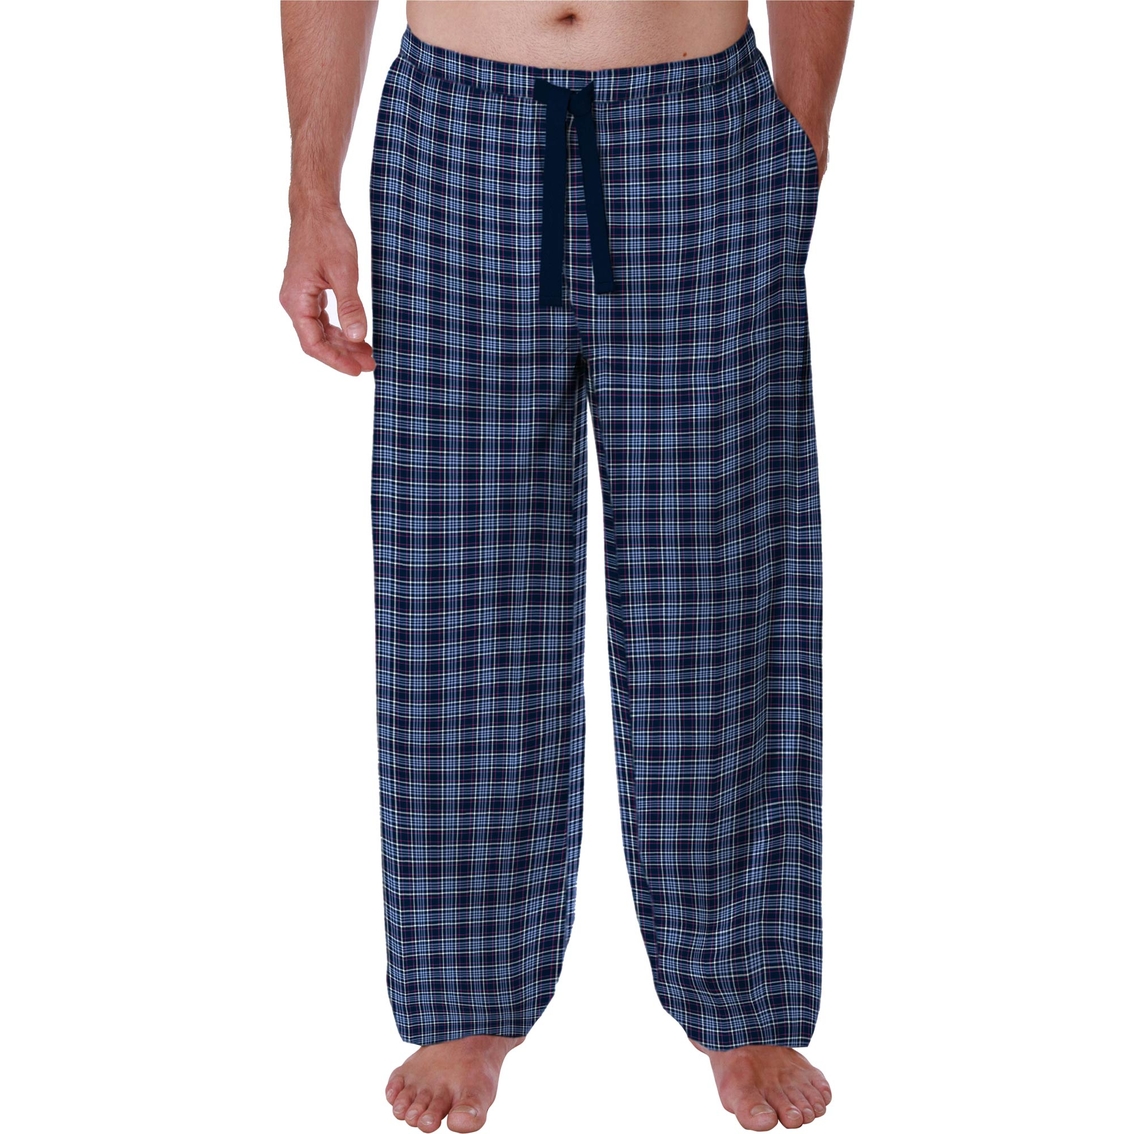 Jockey Broadcloth Sleep Pants | Pajamas & Robes | Clothing ...